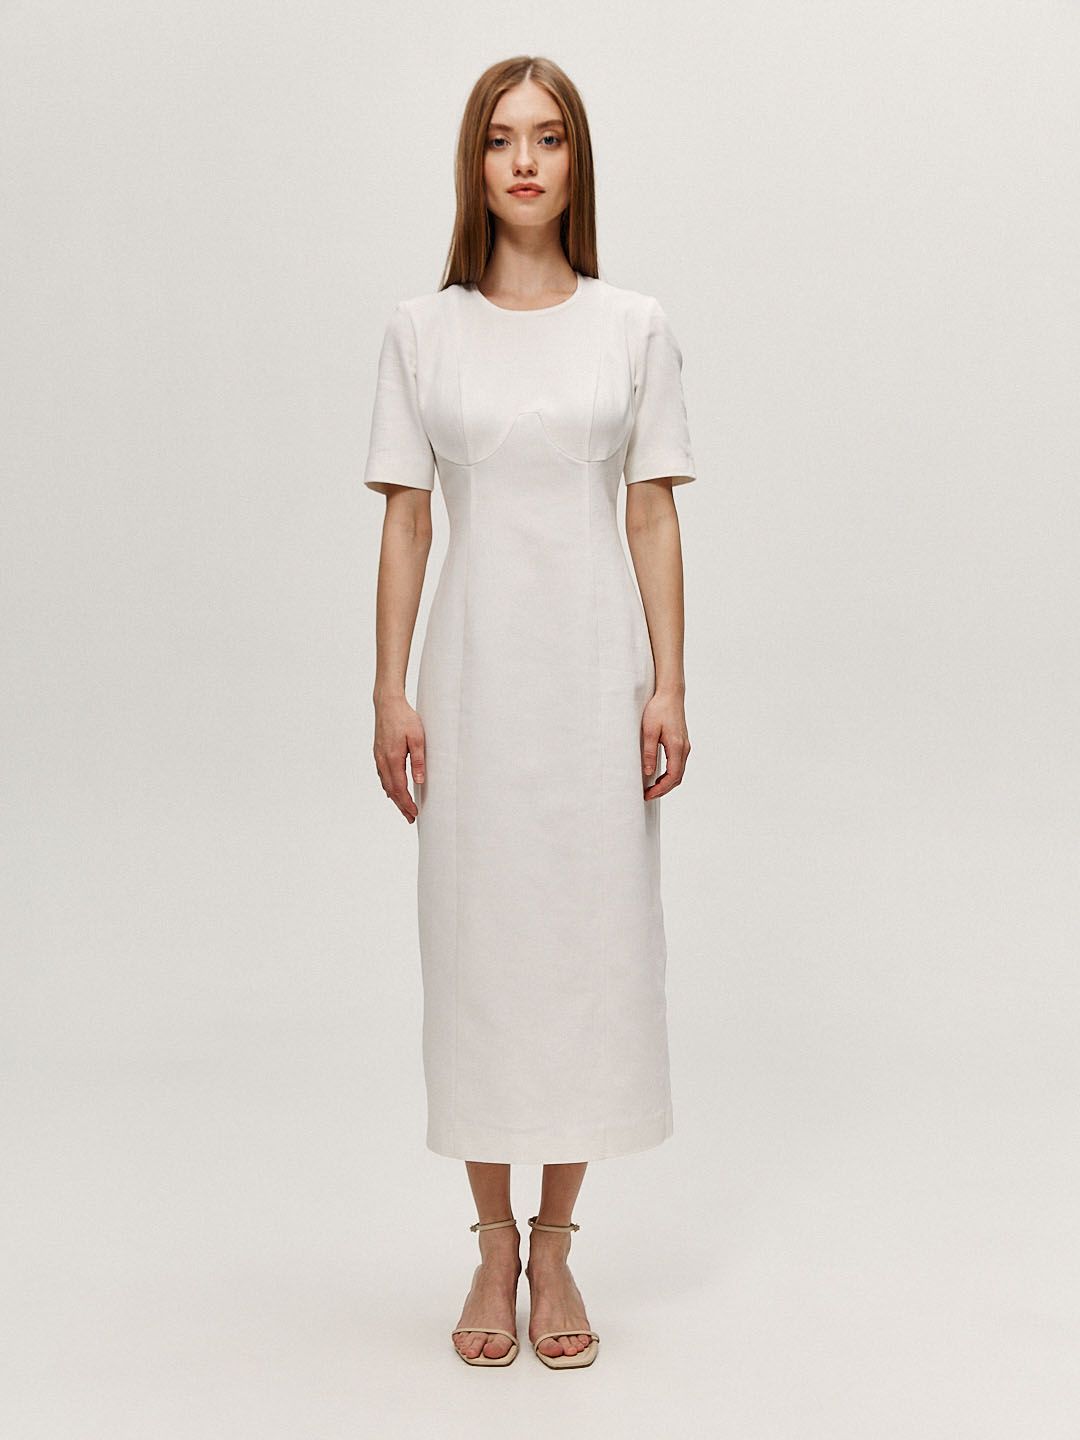 Платье футляр с коротким рукавом белое, купить платье футляр с коротким рукавом белое 